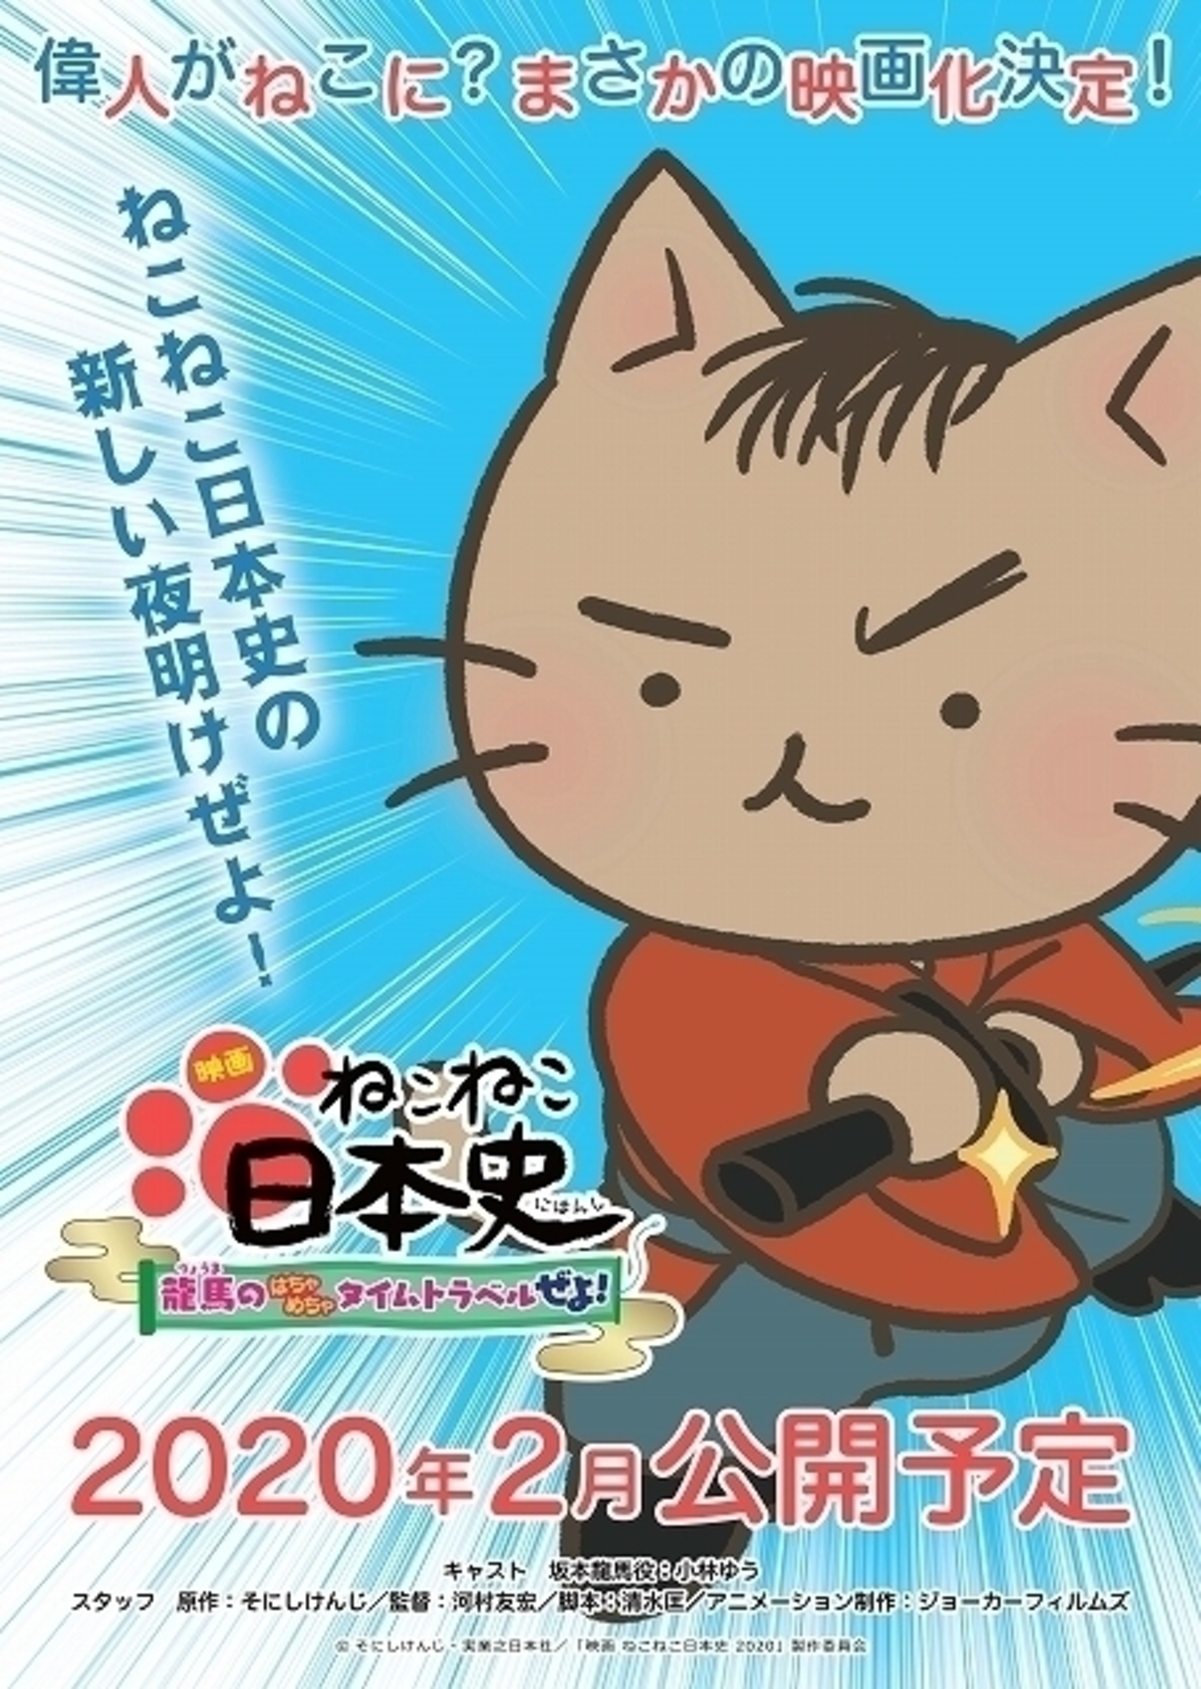 猫になった偉人たちが繰り広げる歴史コメディ ねこねこ日本史 映画化 主役は坂本龍馬 映画ニュース 映画 Com